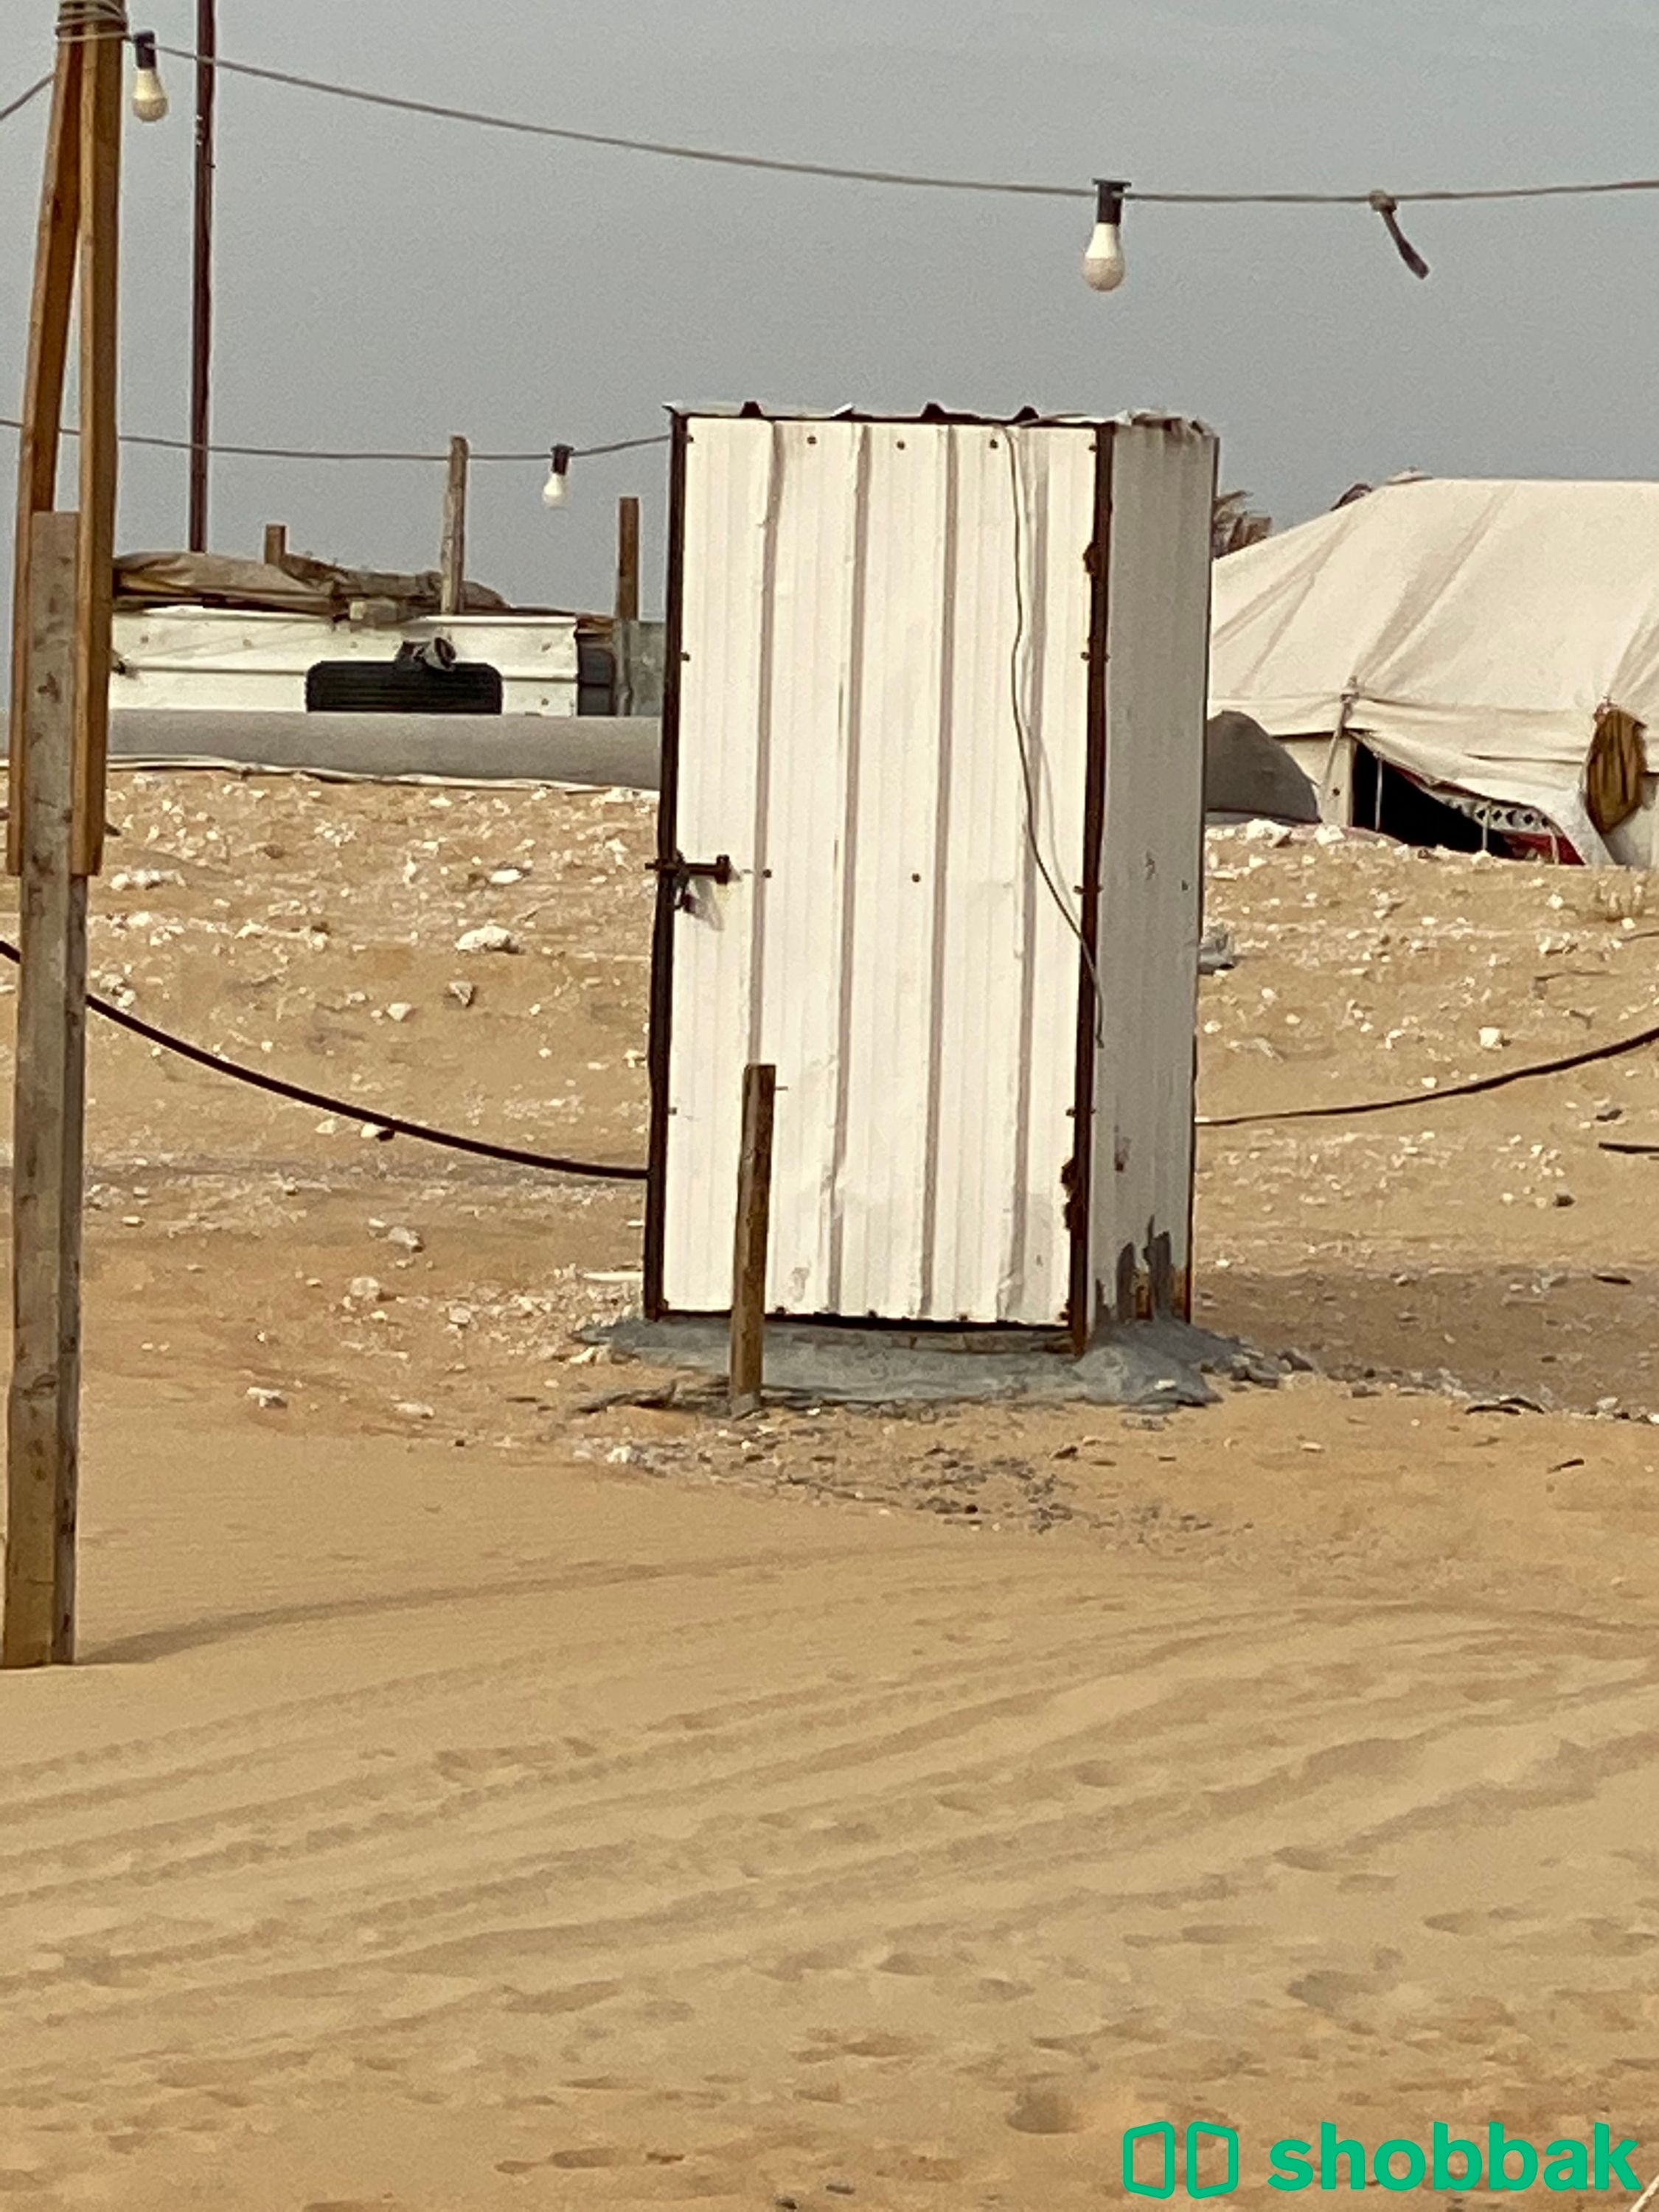 مخيم العبير للايجار اليومي الدمام طريق المطار Shobbak Saudi Arabia